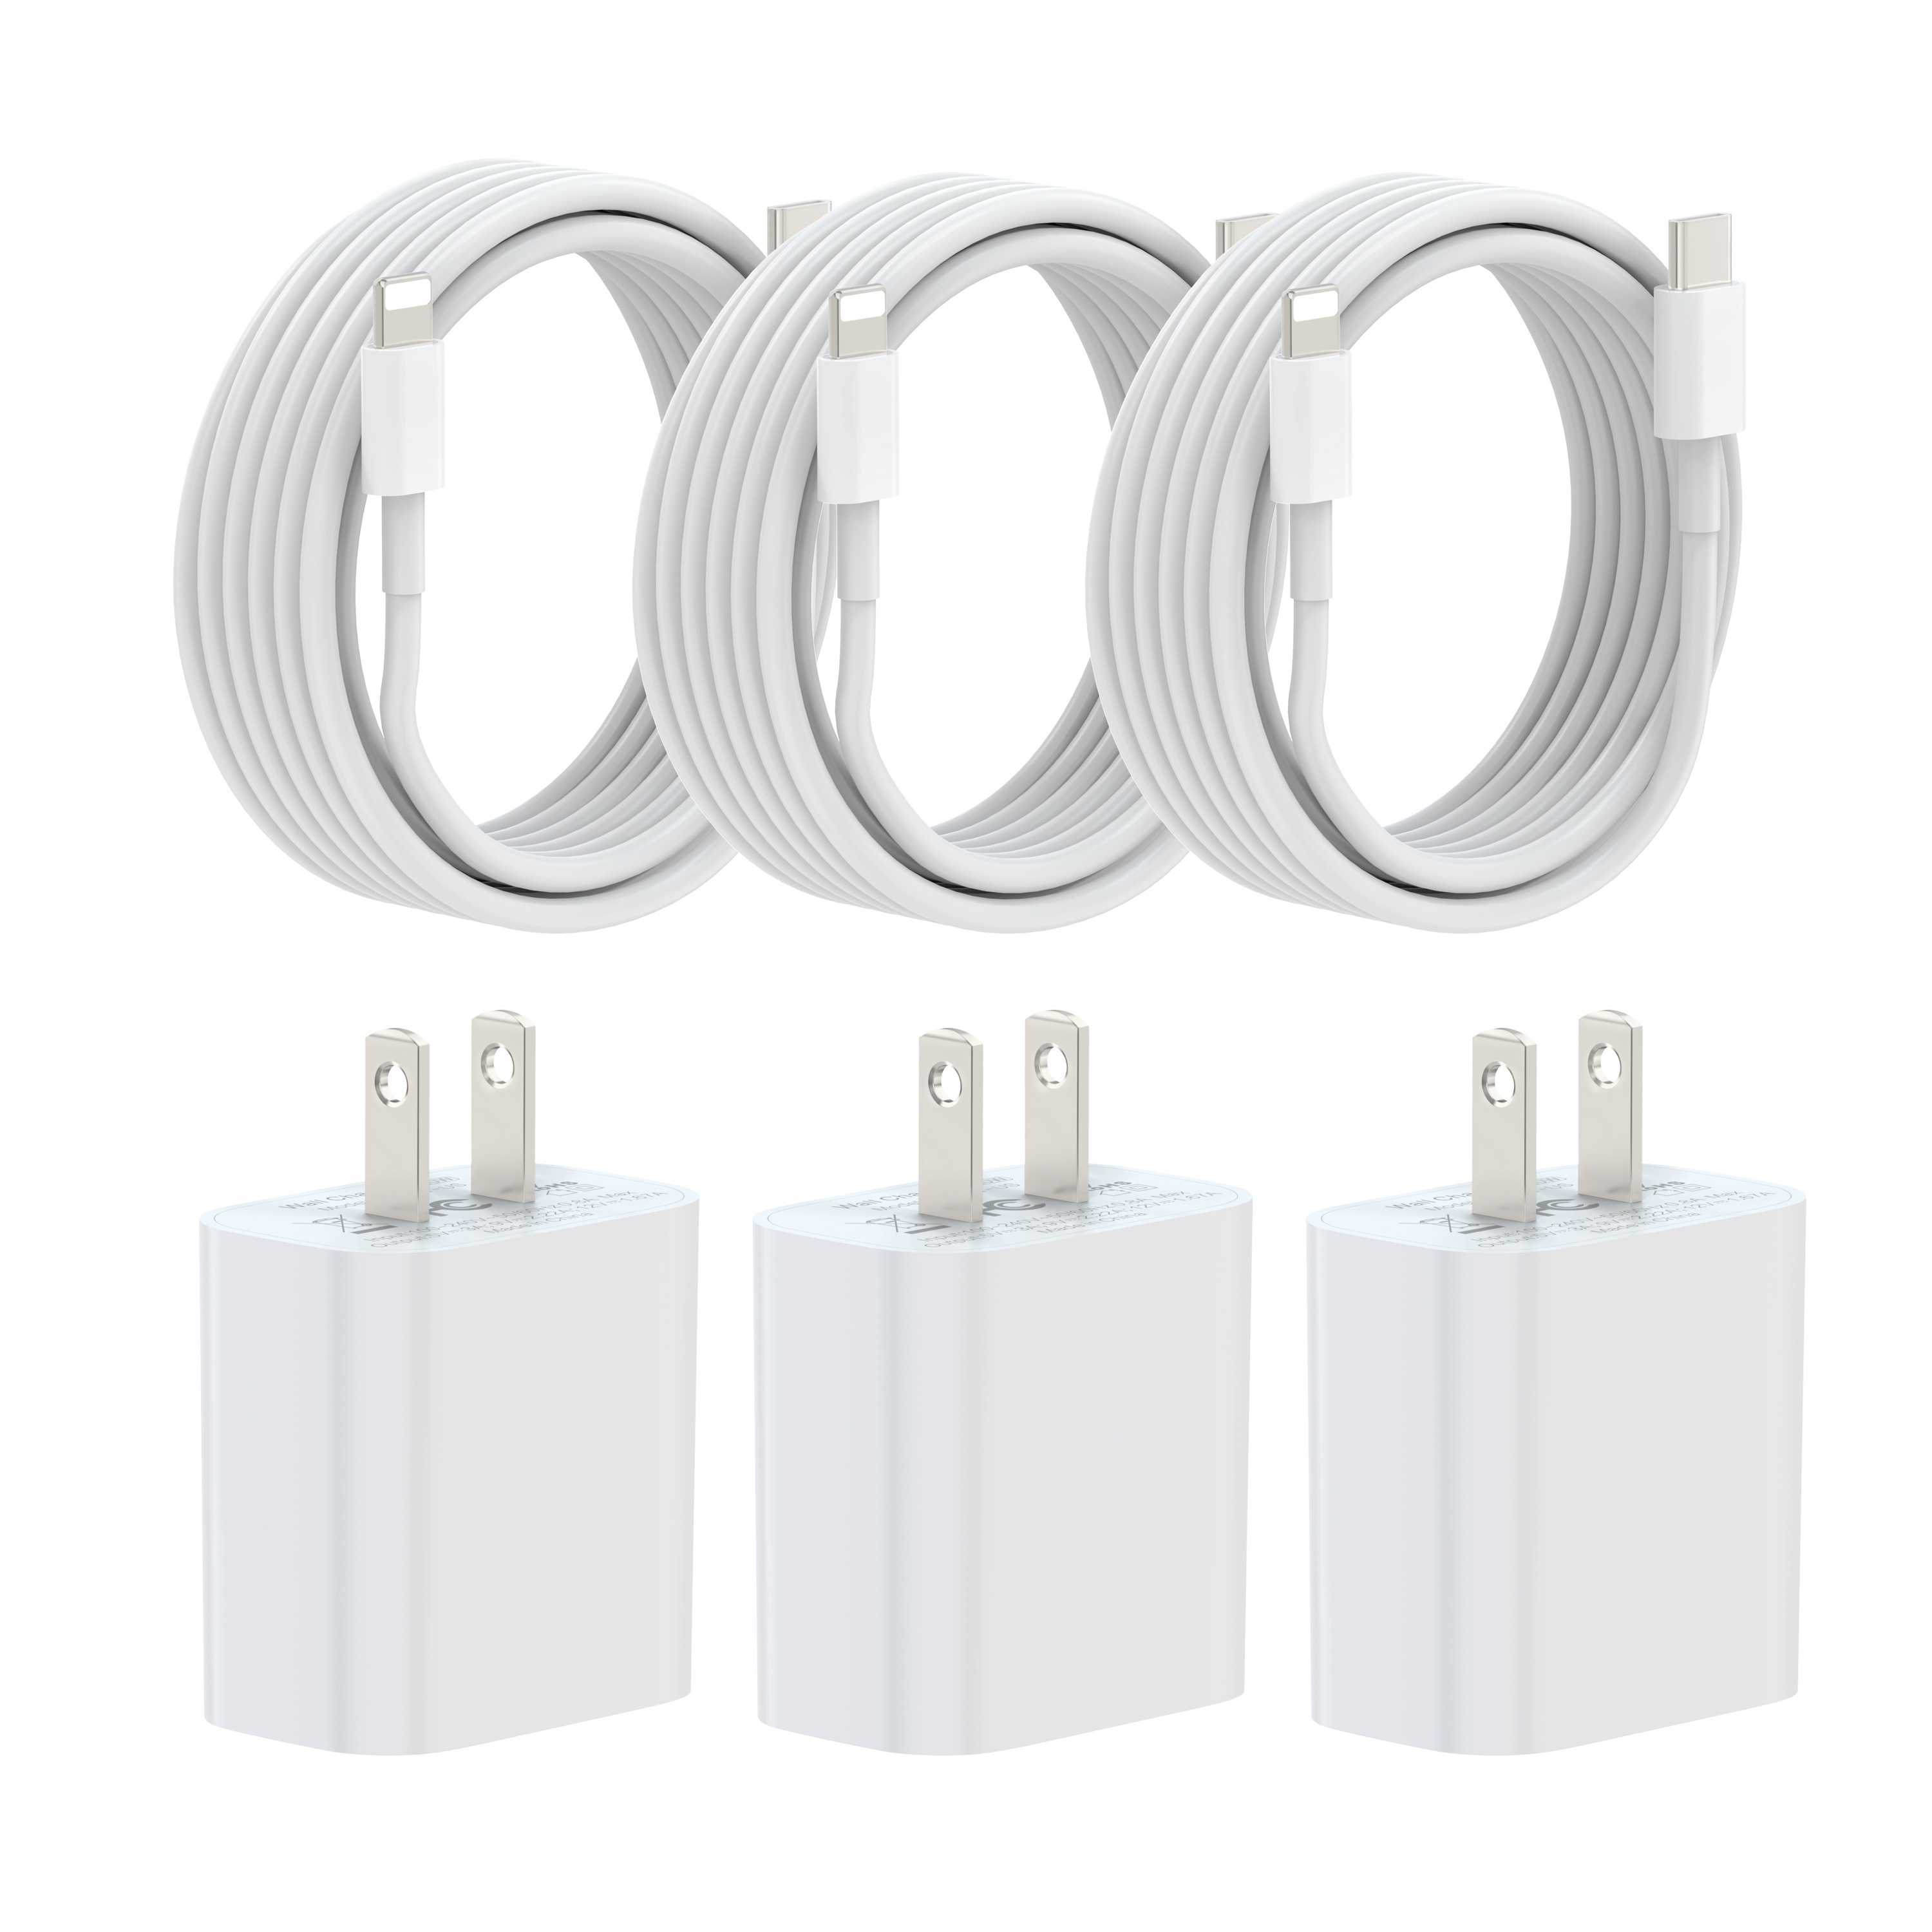  Kit de cargador rápido para iPhone 12, certificado por Apple  MFi, cargador de pared de 20 W PD tipo C con cable Lightning de 6 pies  compatible con iPhone 12/12 Mini/12Pro/12